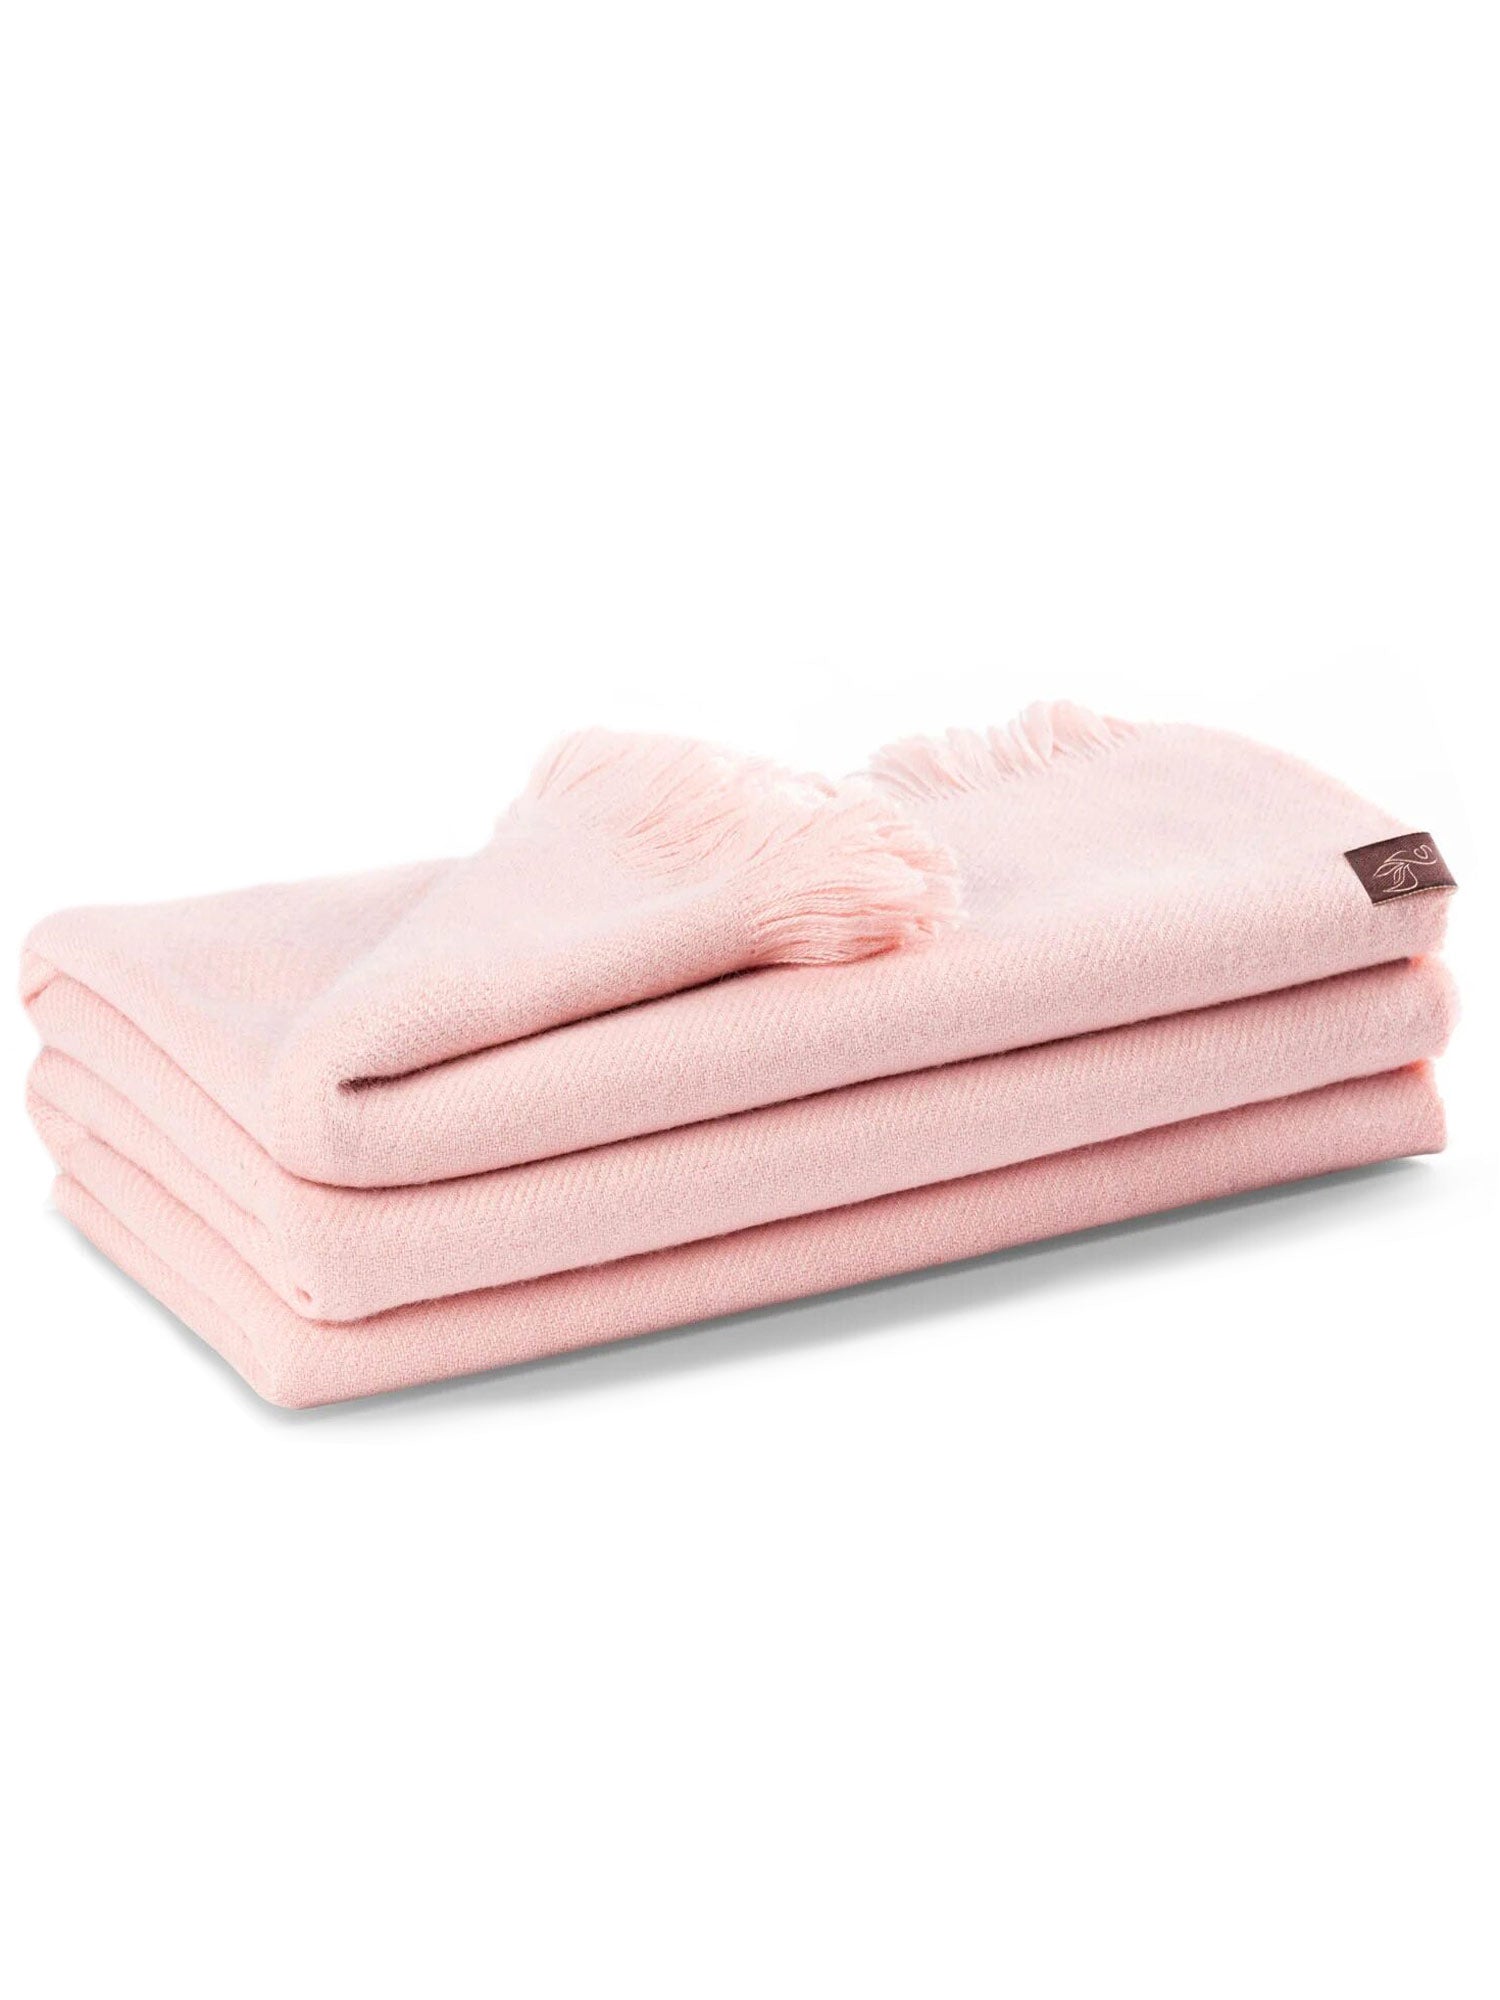 Κουβέρτα Inkari Alpaca -Elegante Pink